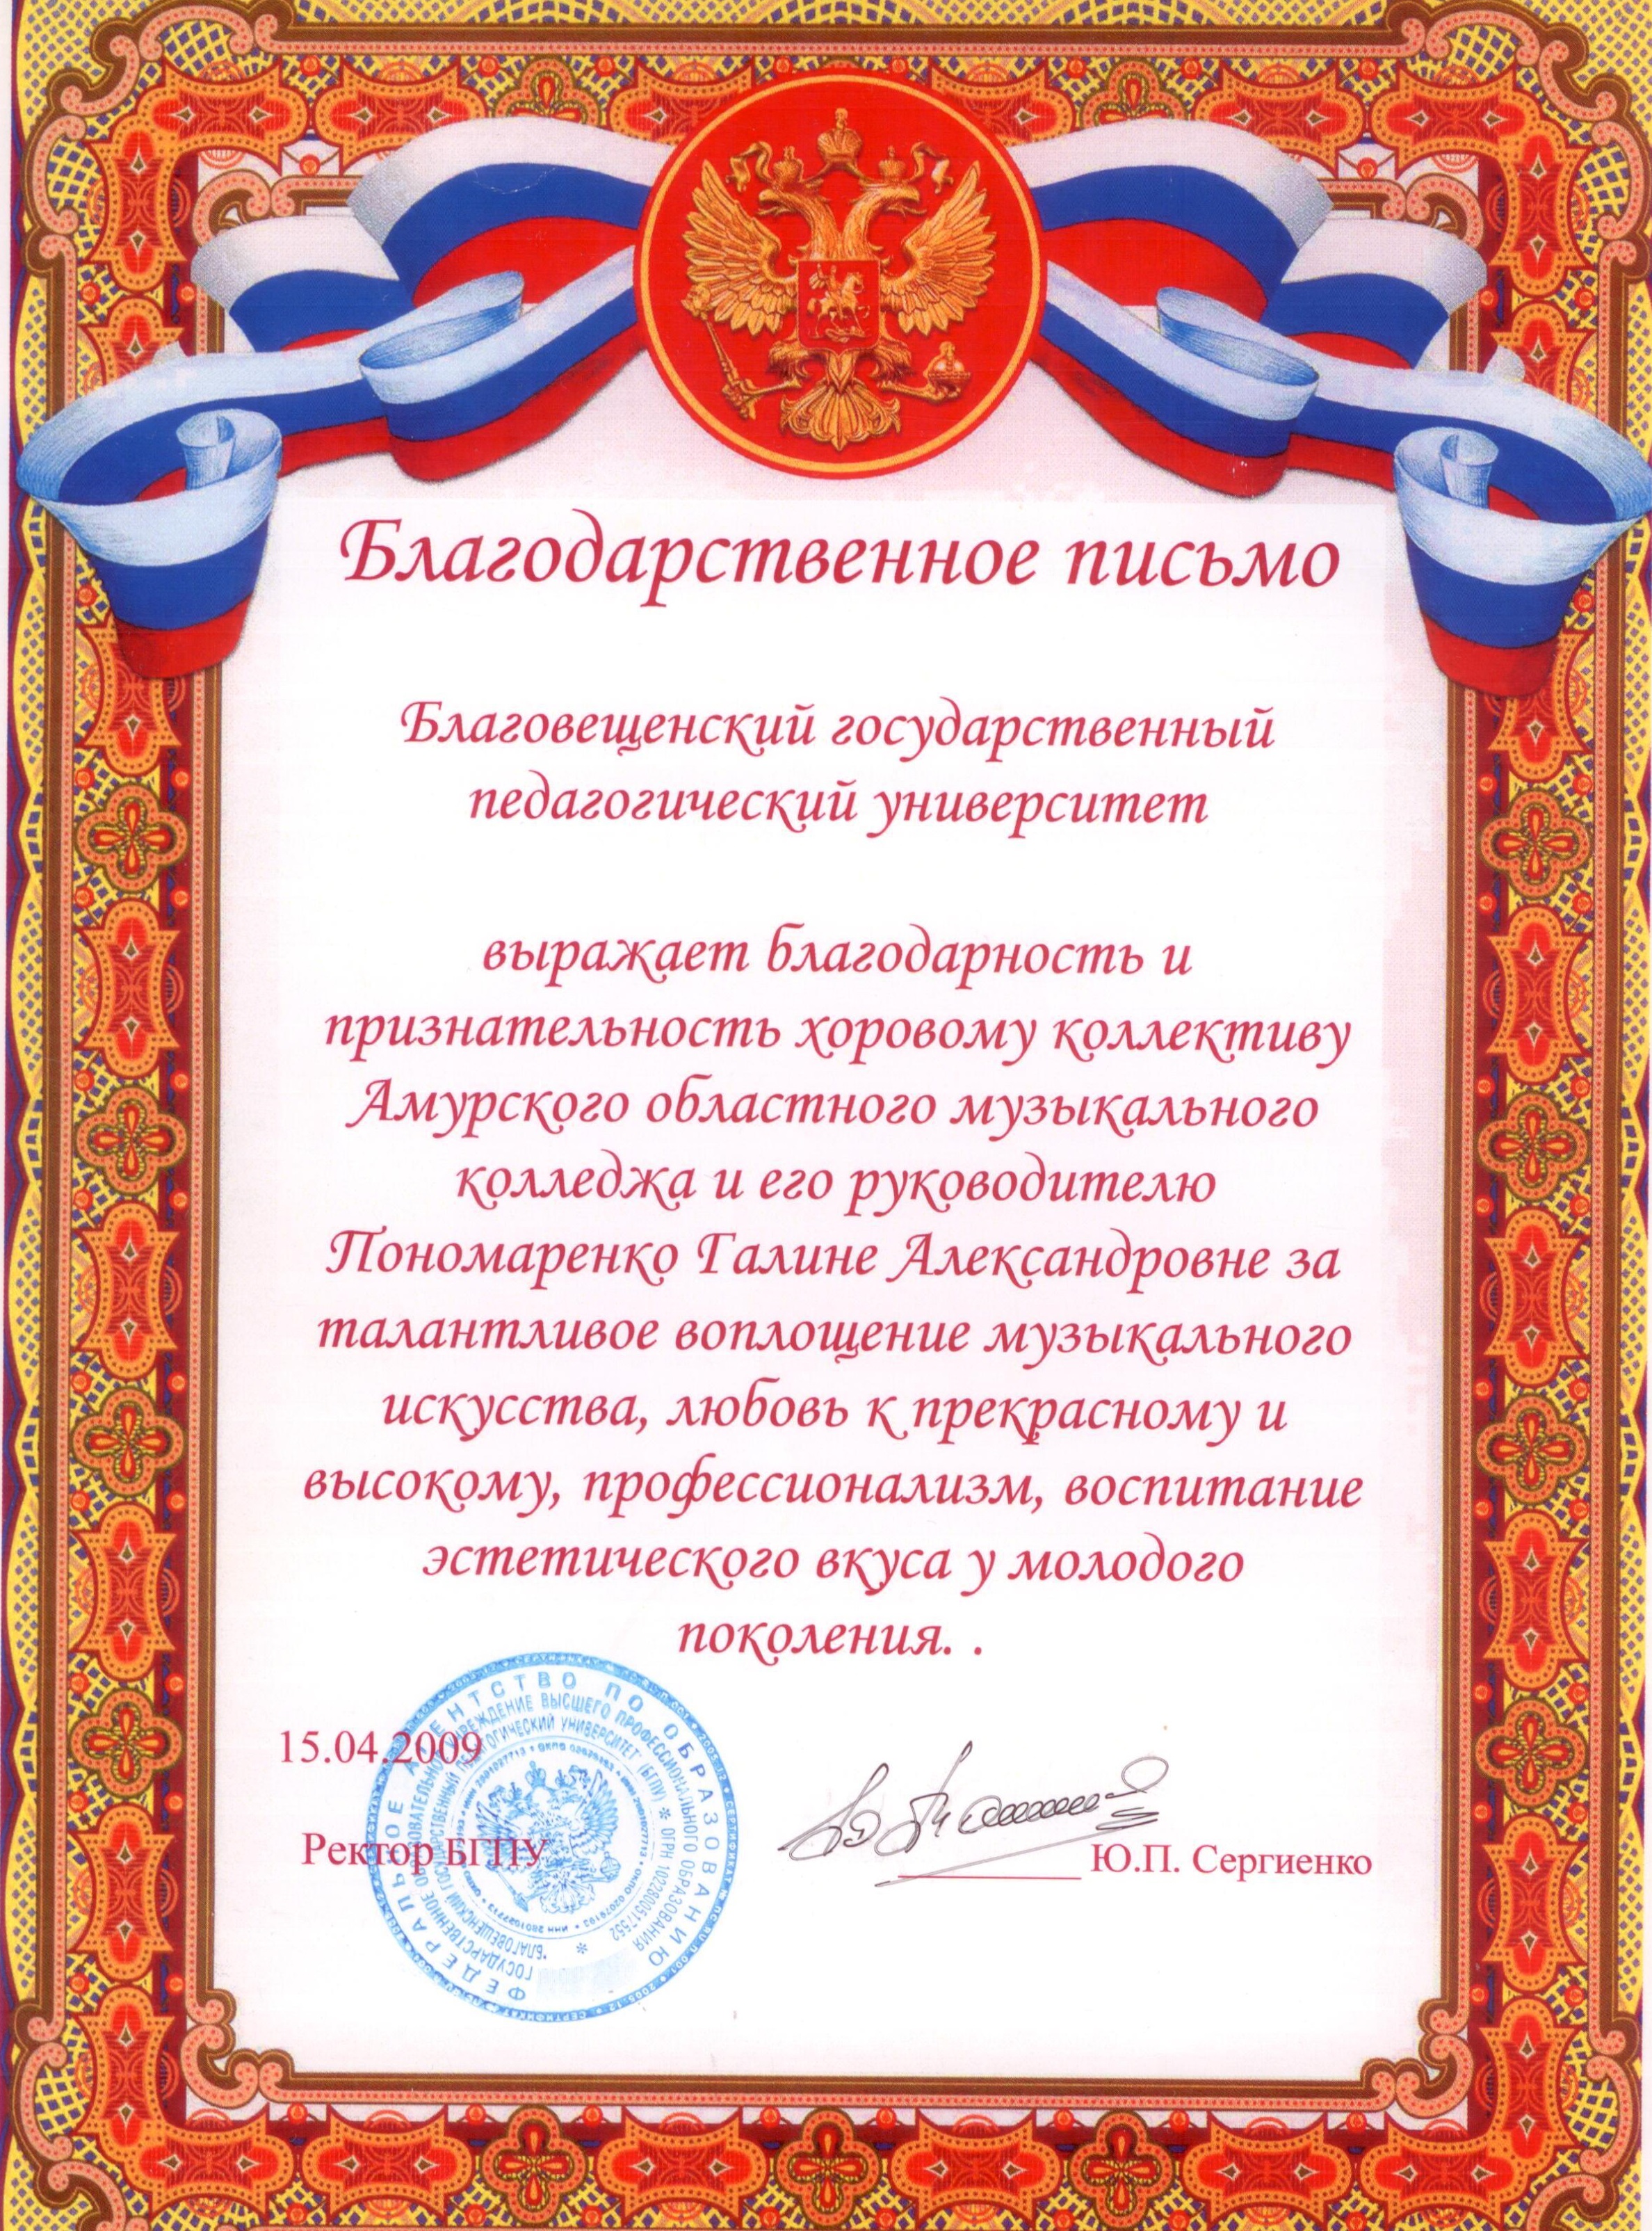 Благодарственное письмо хоровому коллективу и его руководителю Пономаренко Г. А.